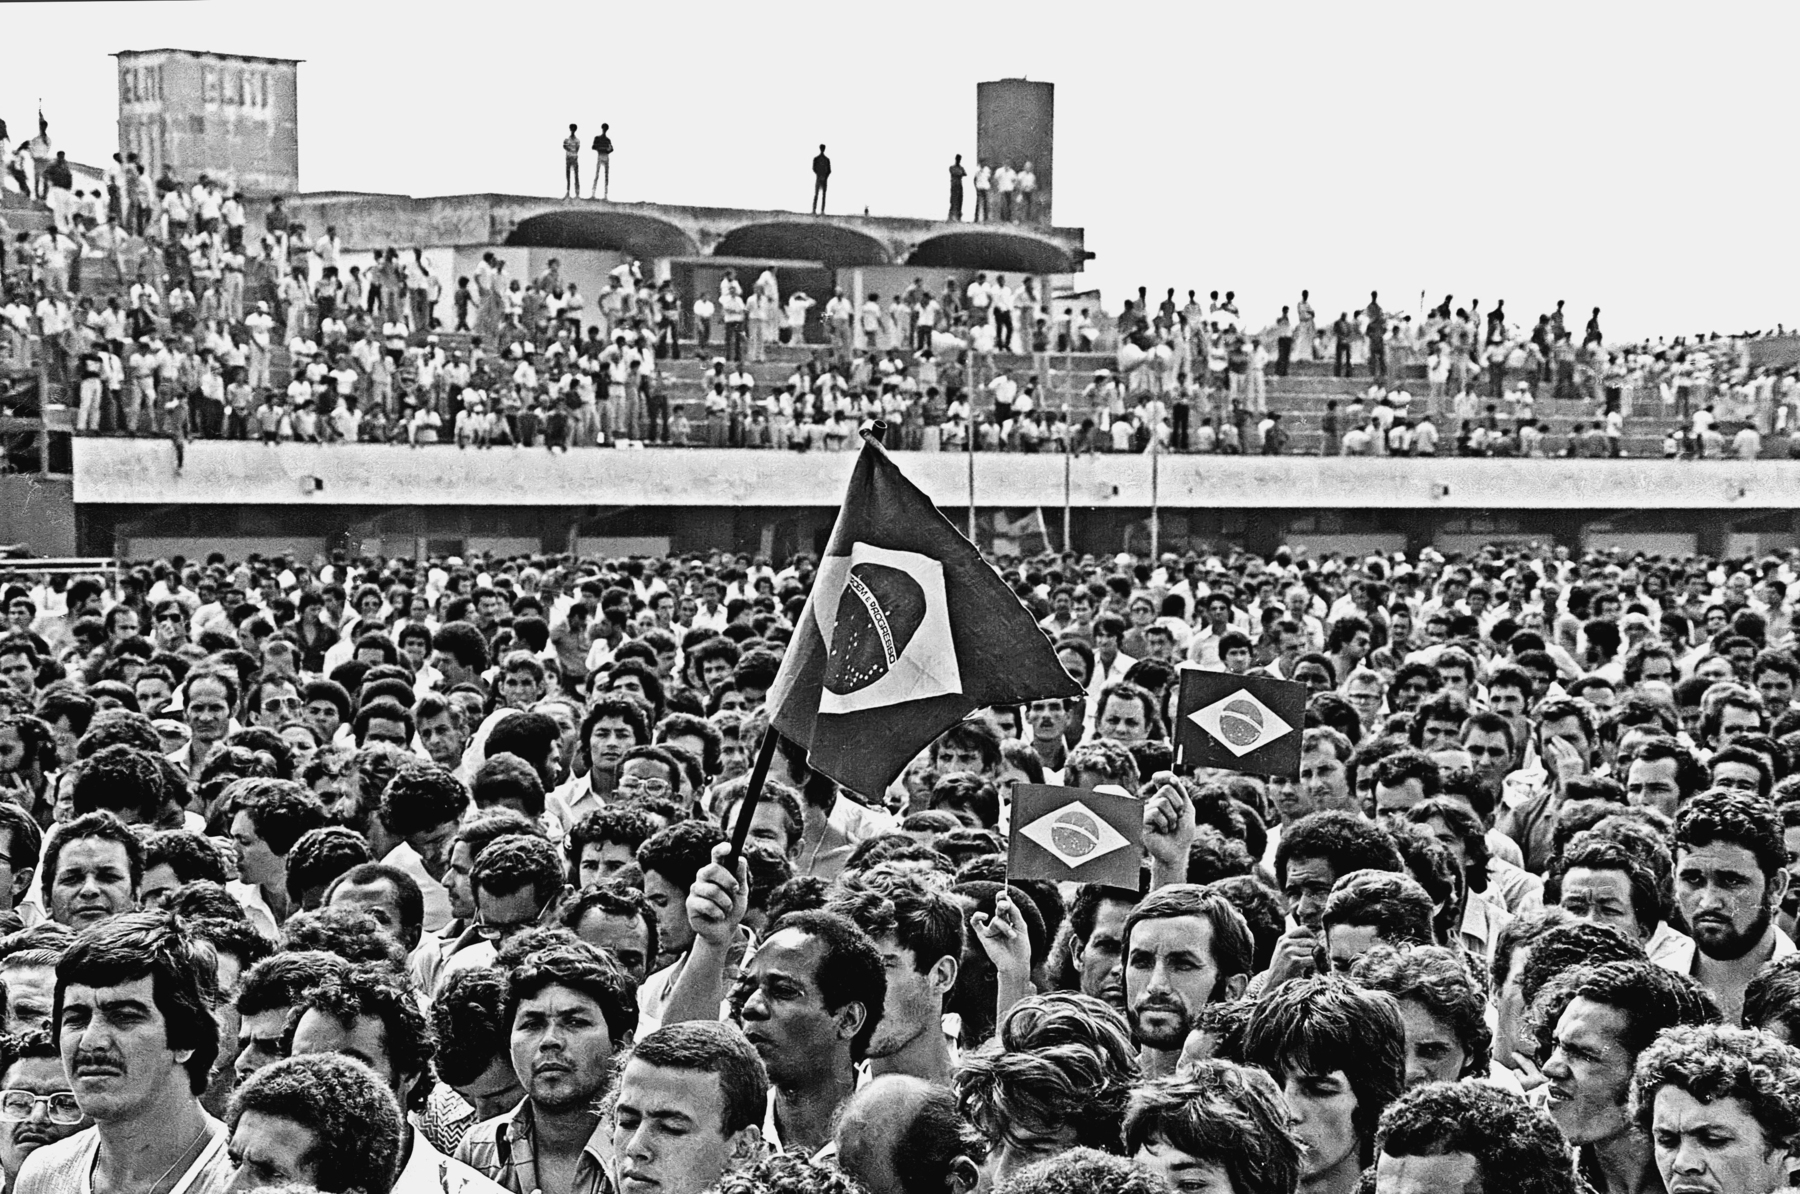 Fotografia em preto e branco. Pessoas aglomeradas em uma assembleia realizada em um estádio de futebol. Algumas carregam pequenas bandeiras do Brasil. Ao fundo, pessoas nas arquibancadas.